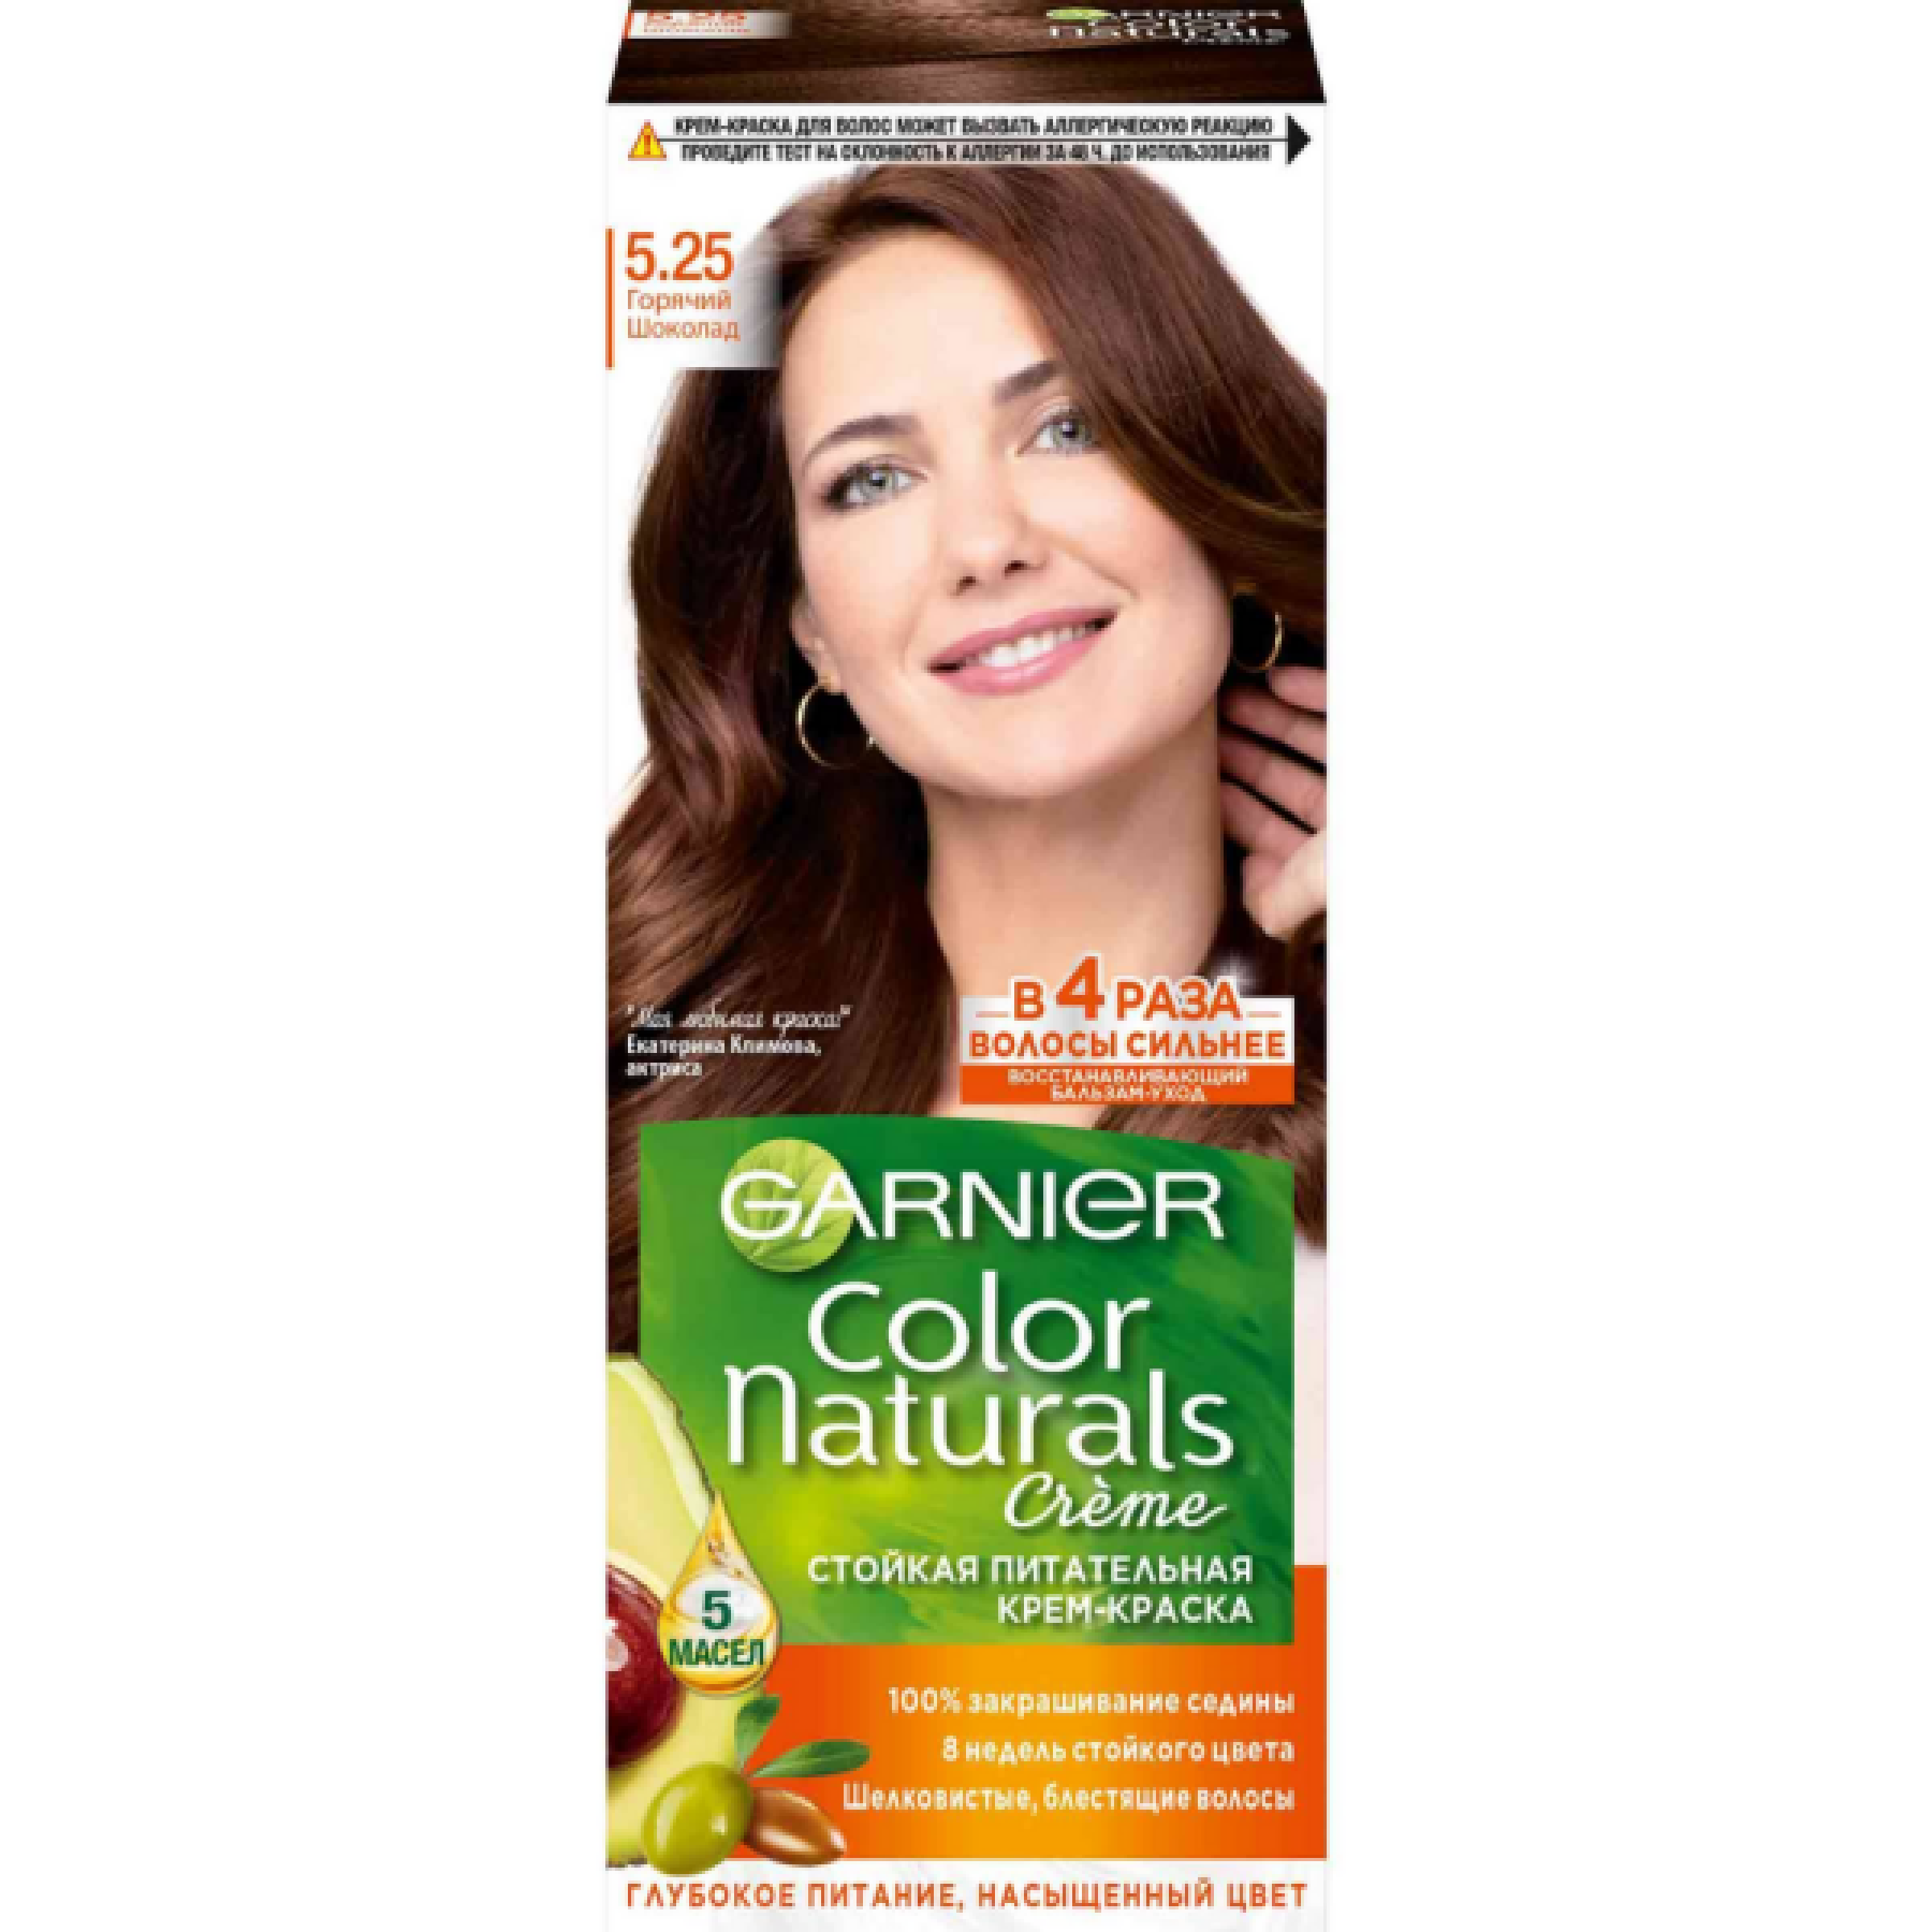 Стойкая крем-краска для волос Garnier Color Naturals, оттенок 5.25, Горячий шоколад, 110 мл